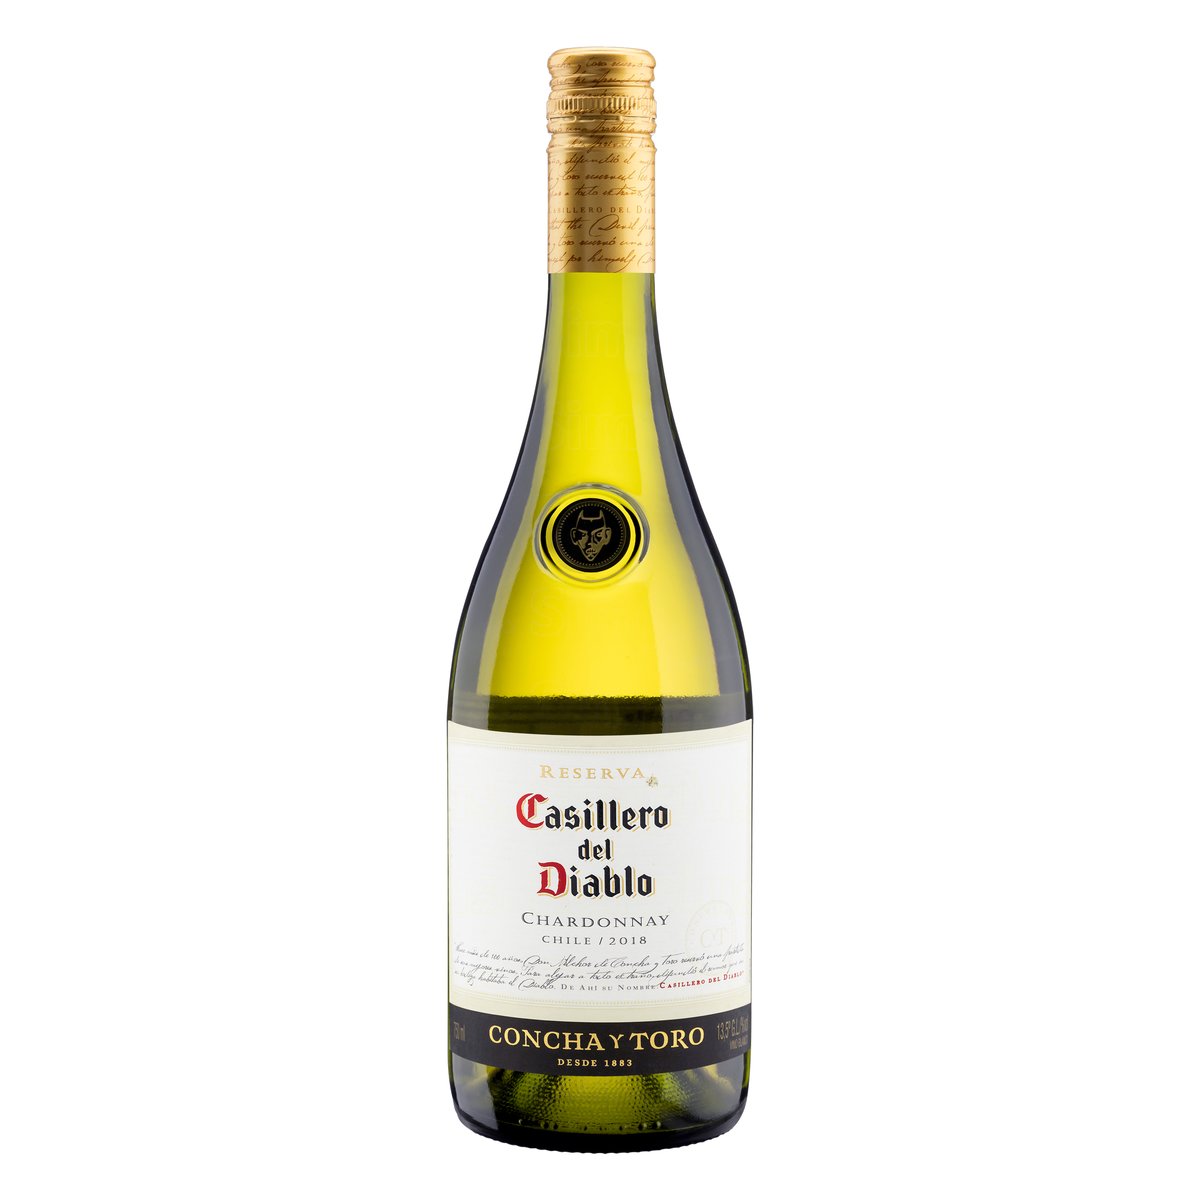 CASILLERO DEL DIABLO Chardonnay